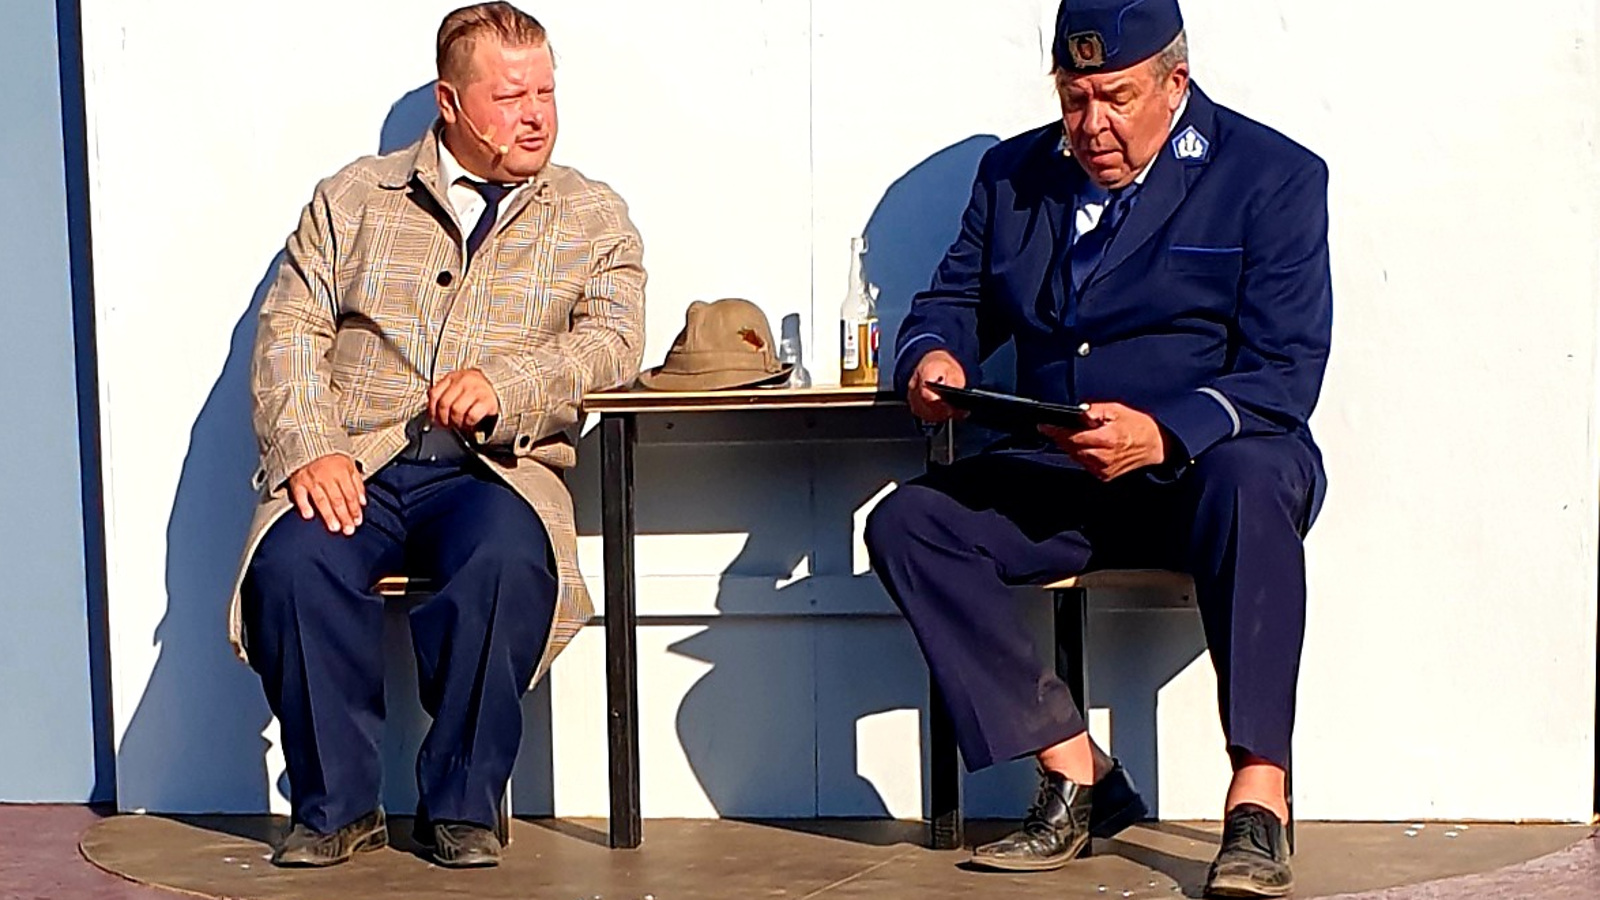 Kuvassa istuu vasemmalla Tenu vaalean ruskeassa popliinitakissa ja oikealla Reinikainen sinisessä poliisipuvussa. Välissä on pöytä.